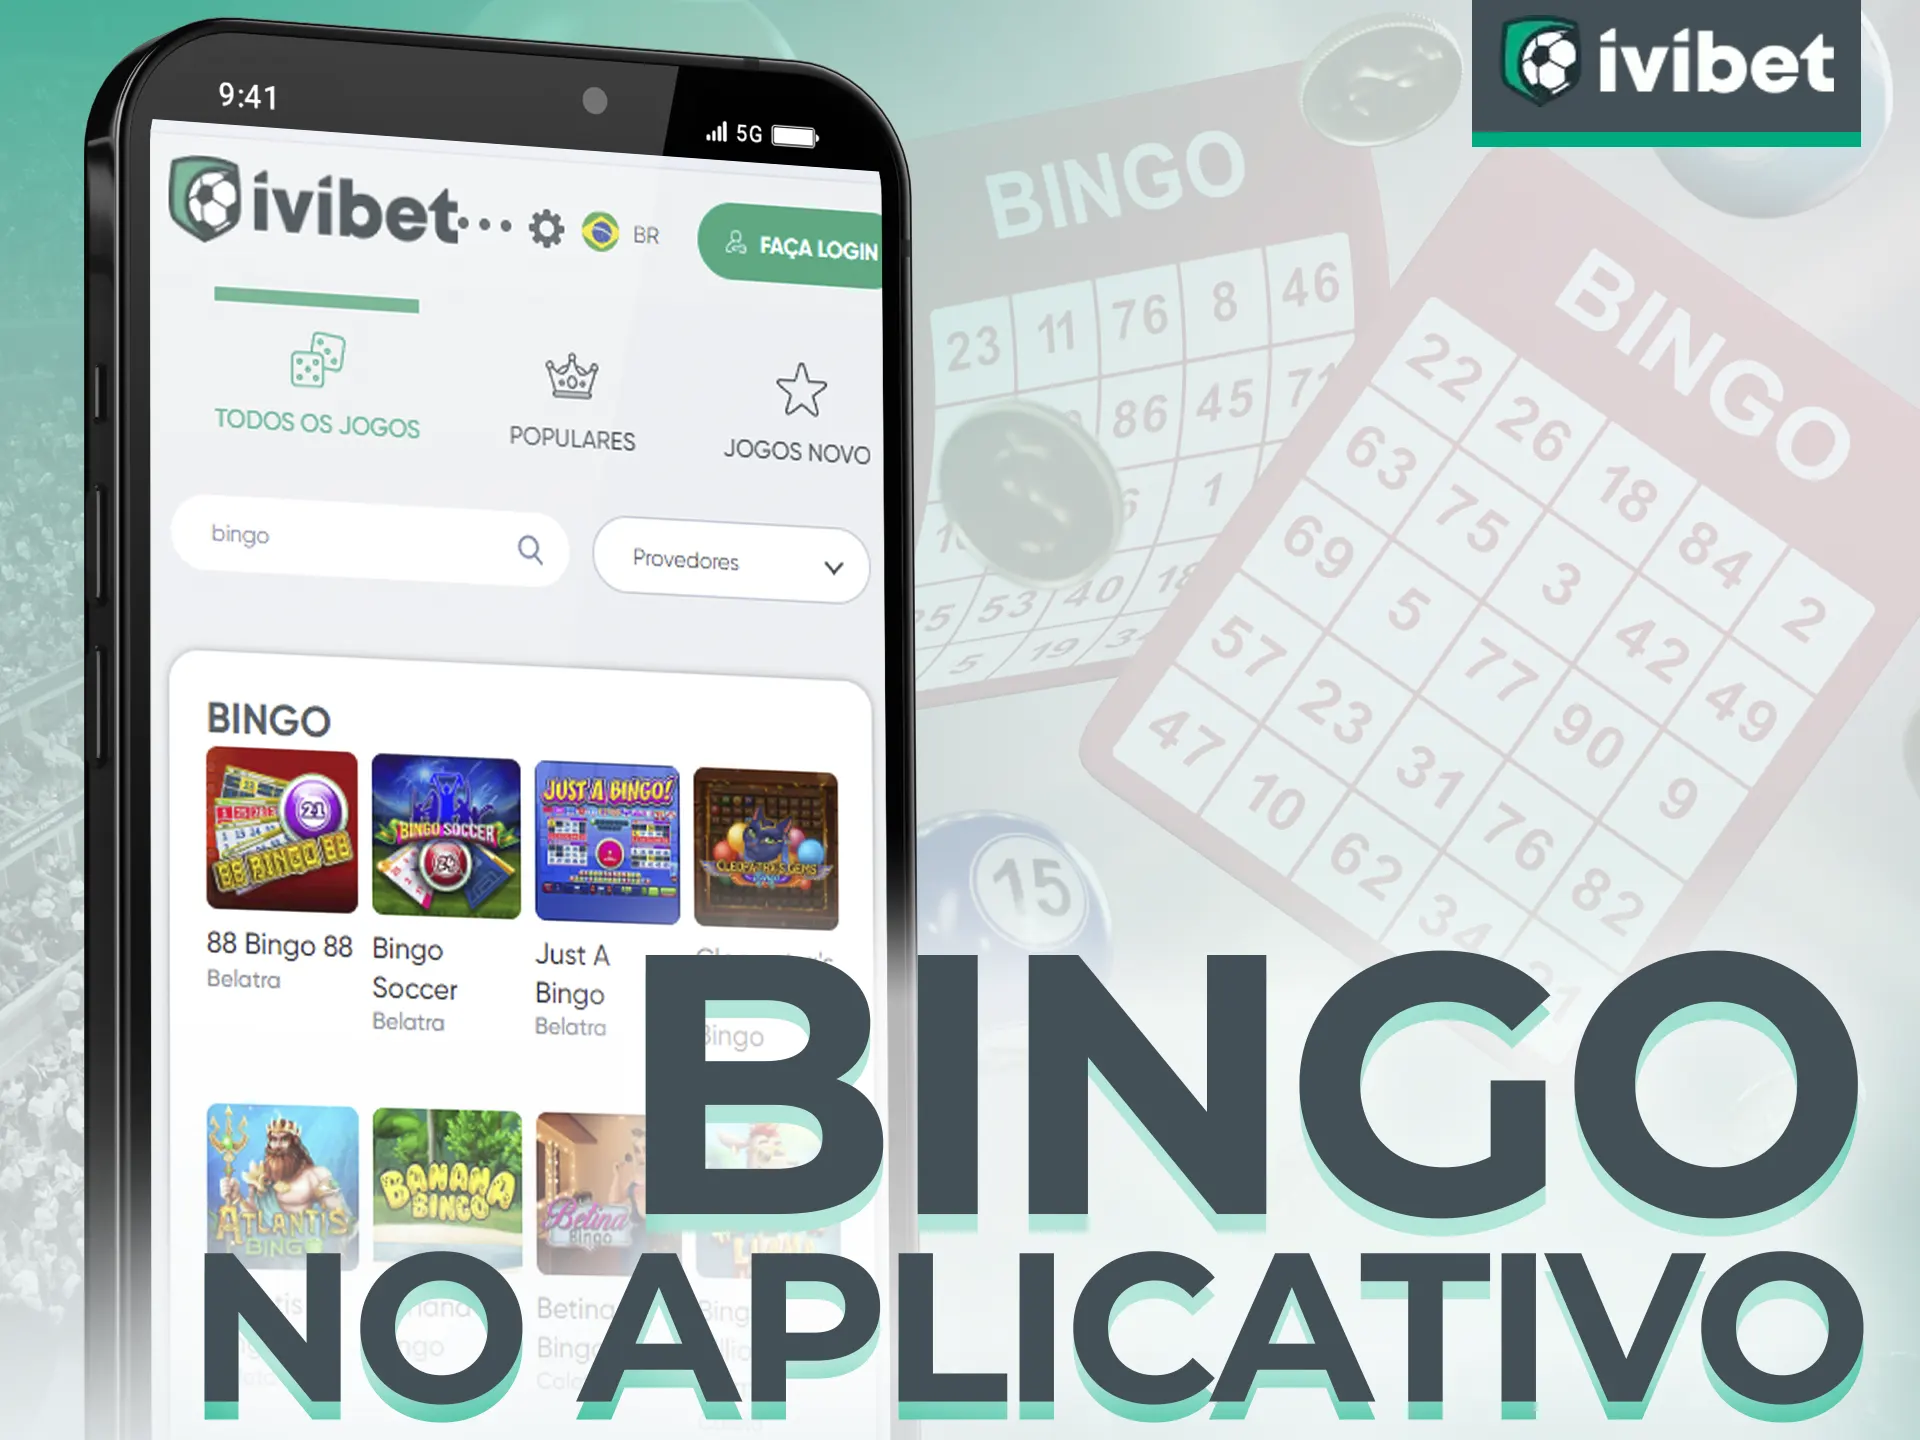 Baixe o aplicativo de Bingo da Ivibet para jogar sem problemas!